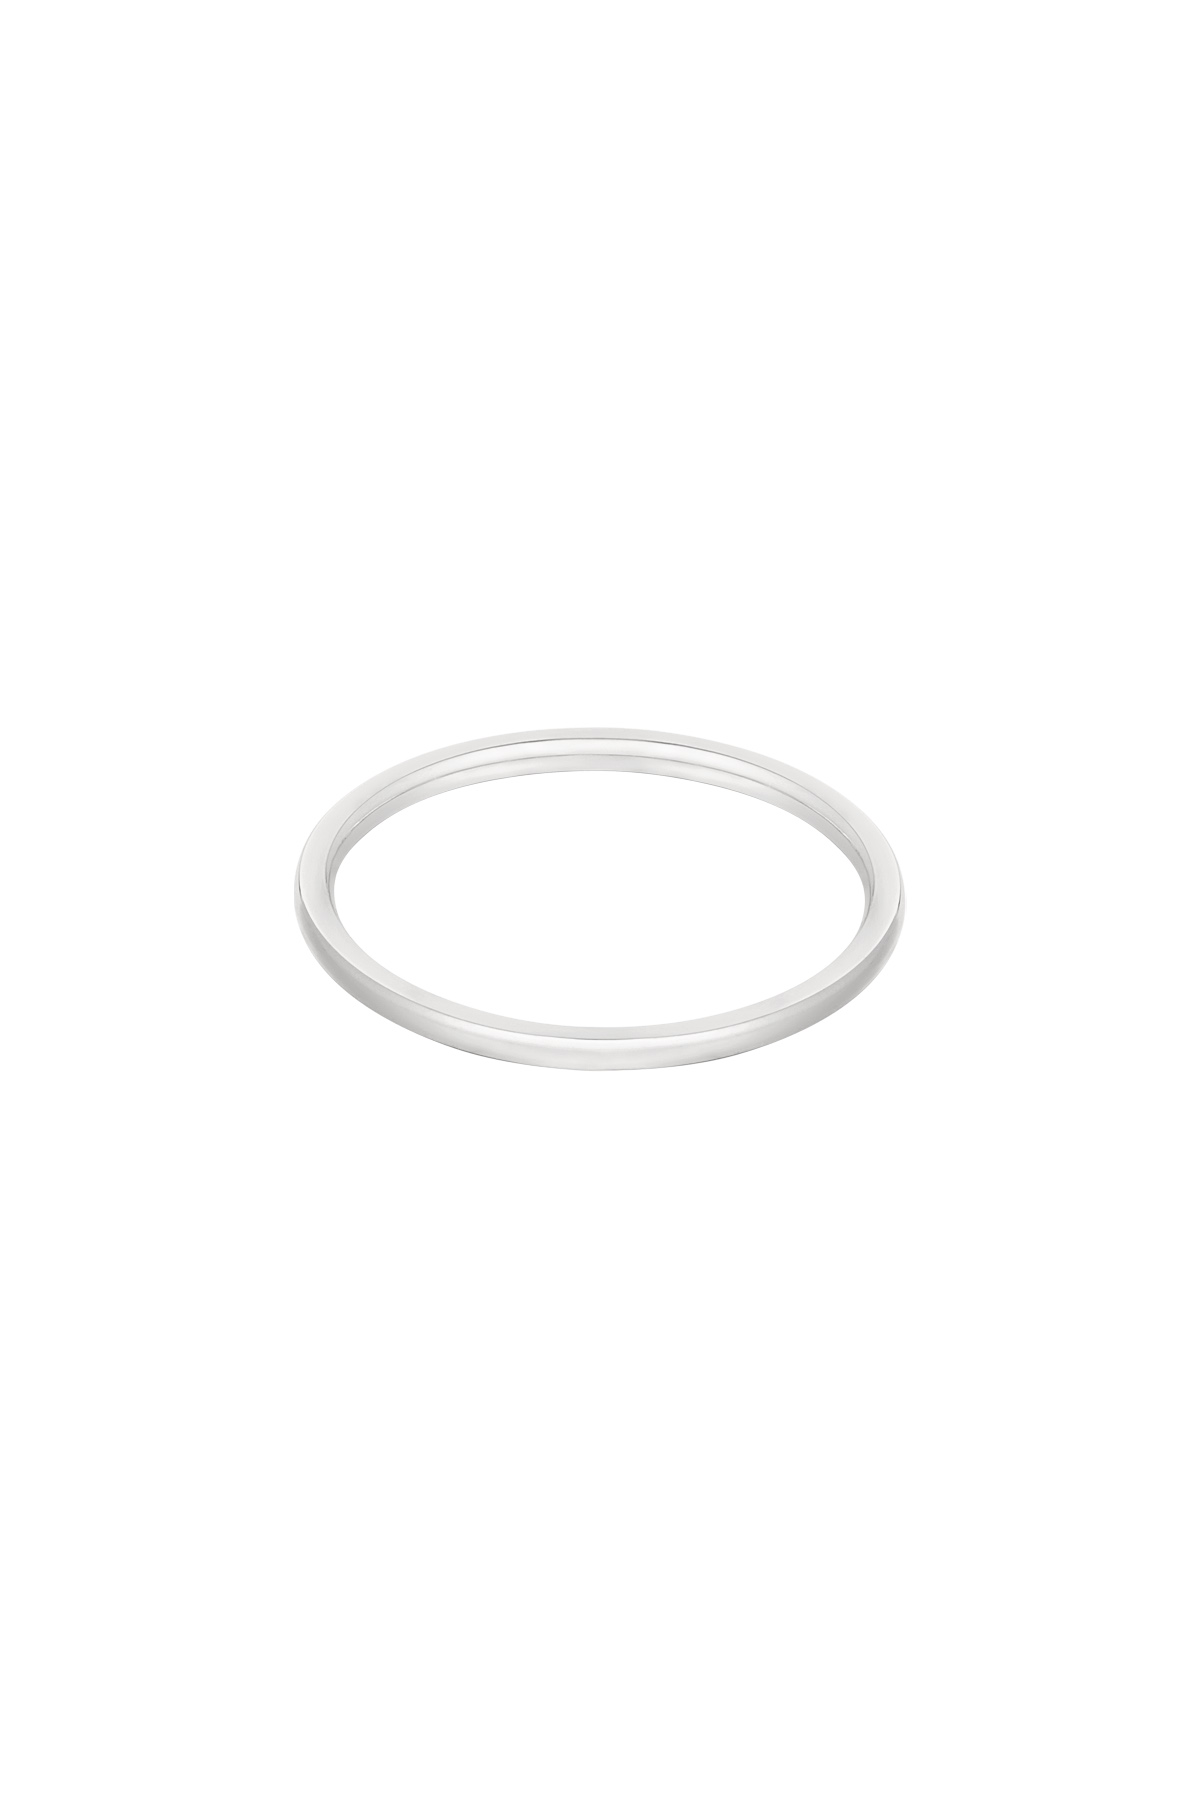 Ring minimalistisch - zilver h5 